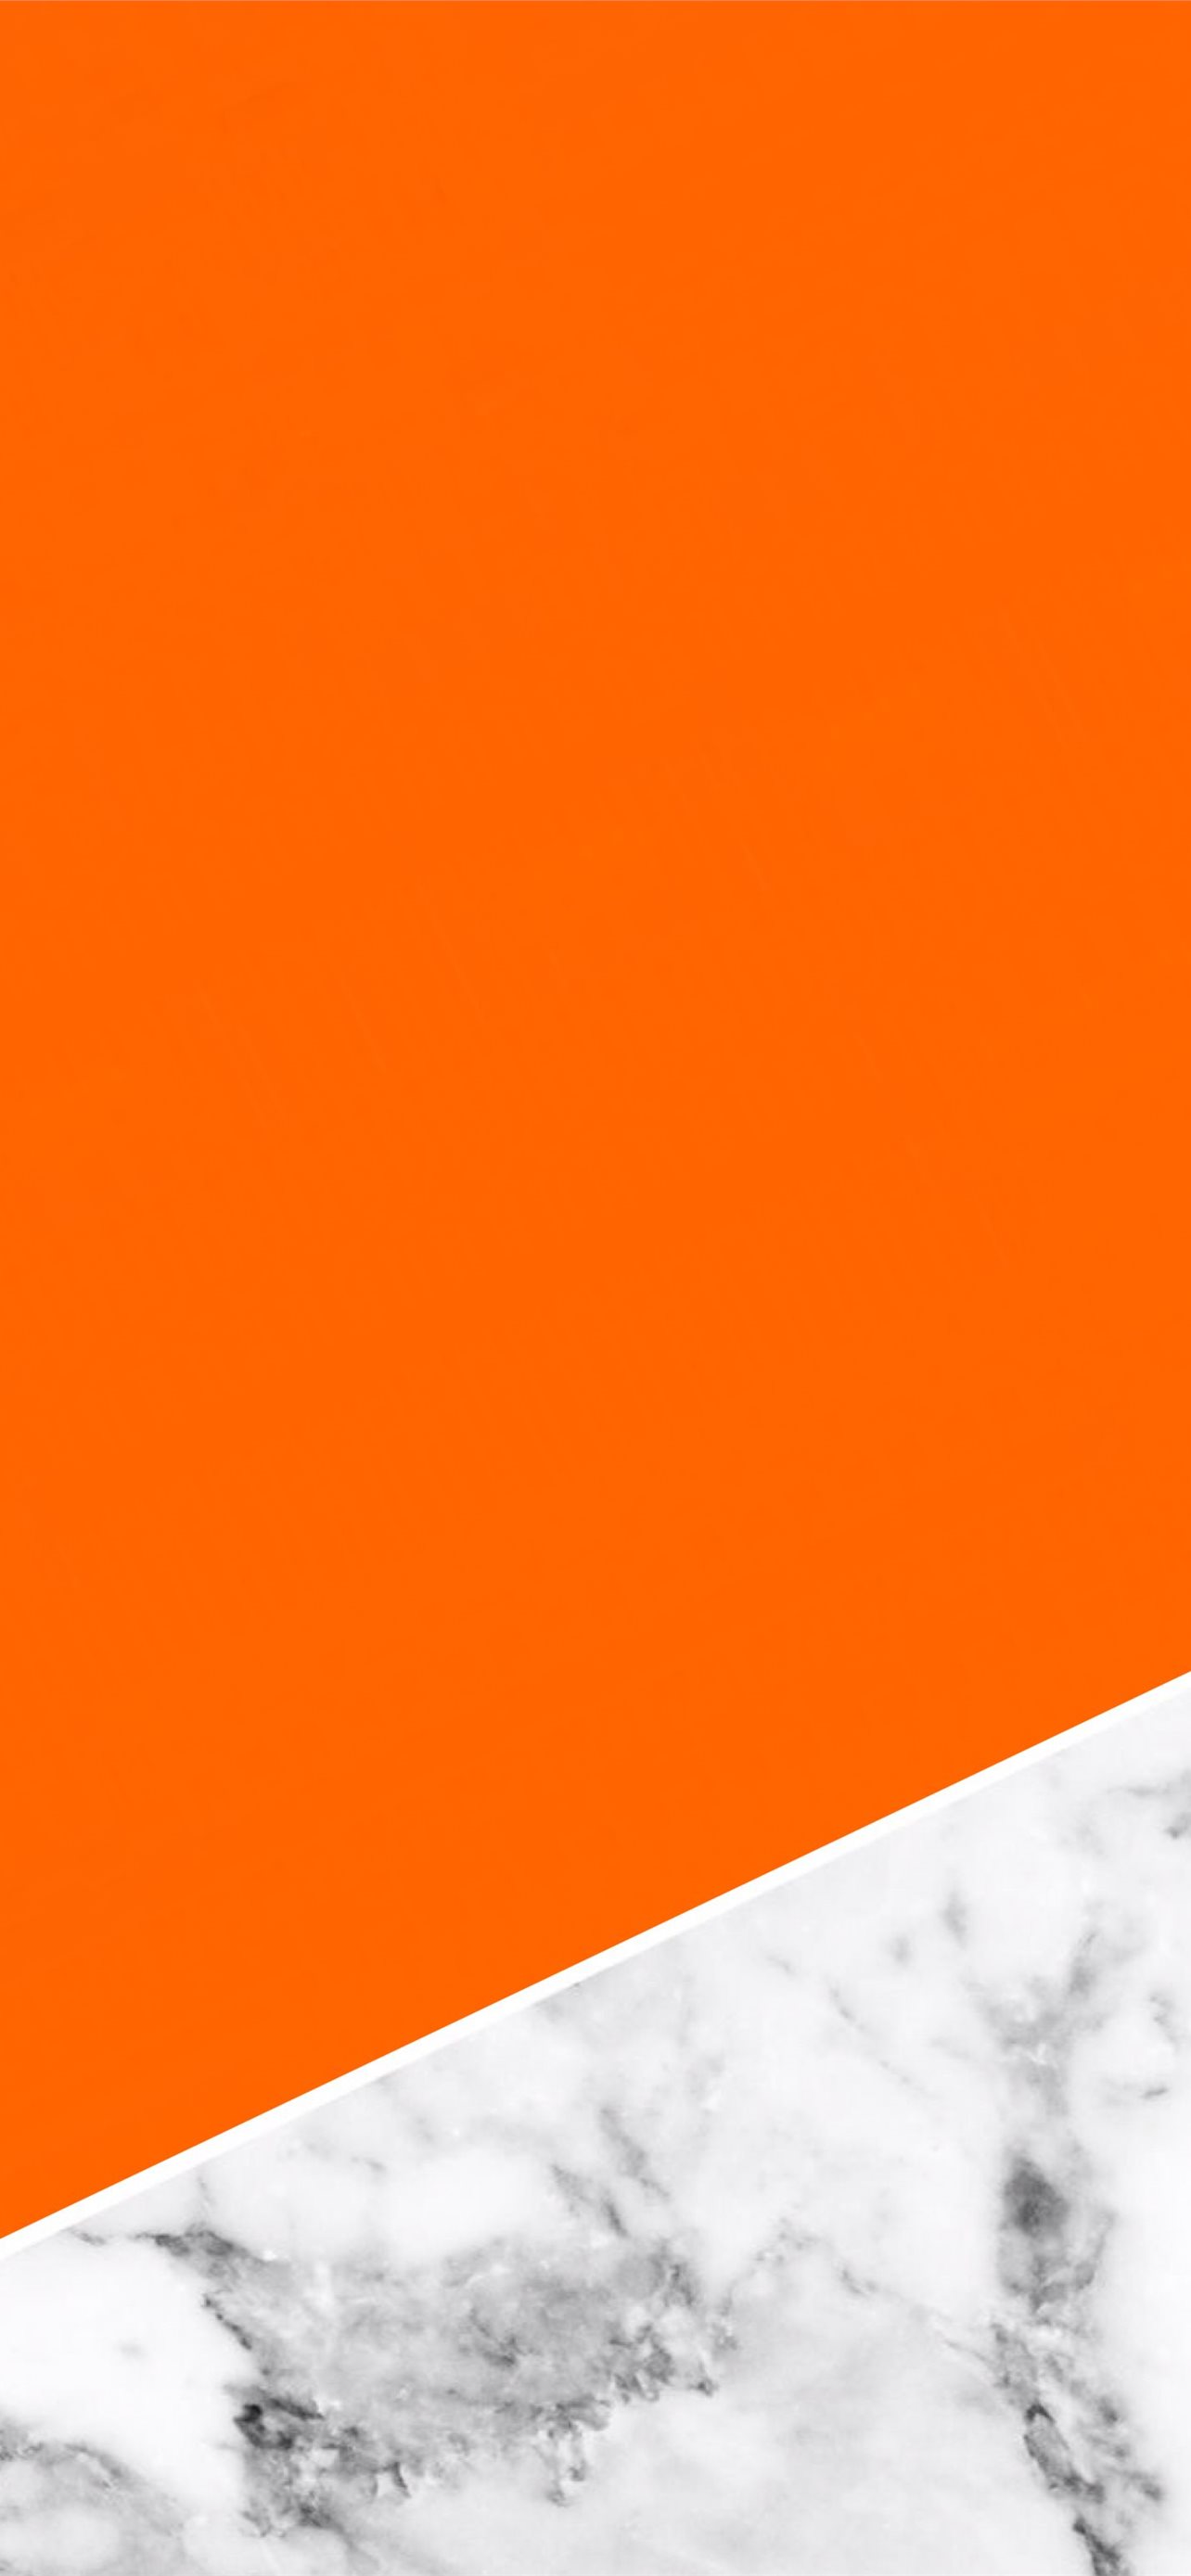 Hình nền iPhone a clockwork orange miễn phí: Bạn đang cần một hình nền độc đáo cho điện thoại iPhone của mình? Hình nền a clockwork orange với màu cam tươi sáng sẽ khiến cho điện thoại của bạn trở nên nổi bật và đặc biệt. Hãy tải về hình nền này ngay lập tức để tạo ra một phong cách riêng cho điện thoại của bạn.